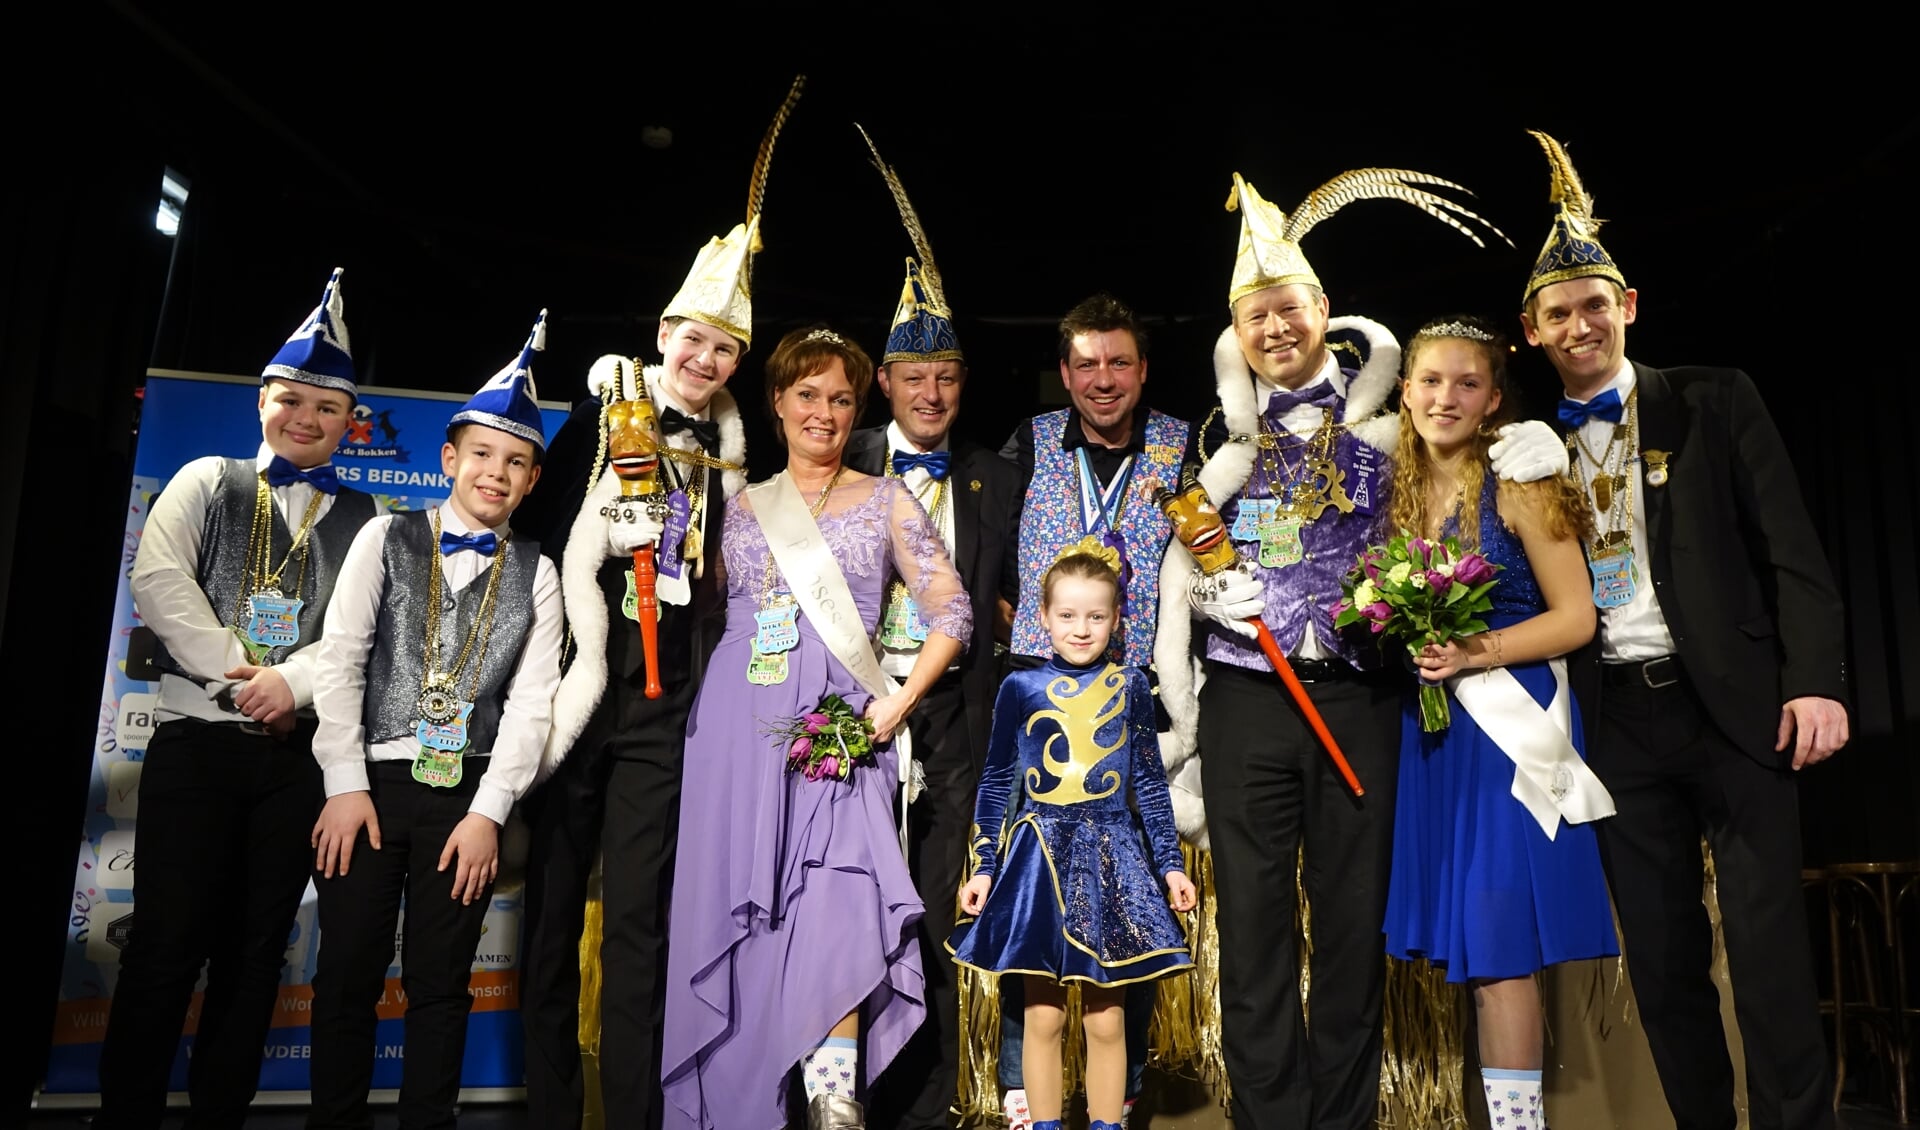 Prinsenpaar Daan en Anja Jansze blikt terug op een fantastisch carnaval. 